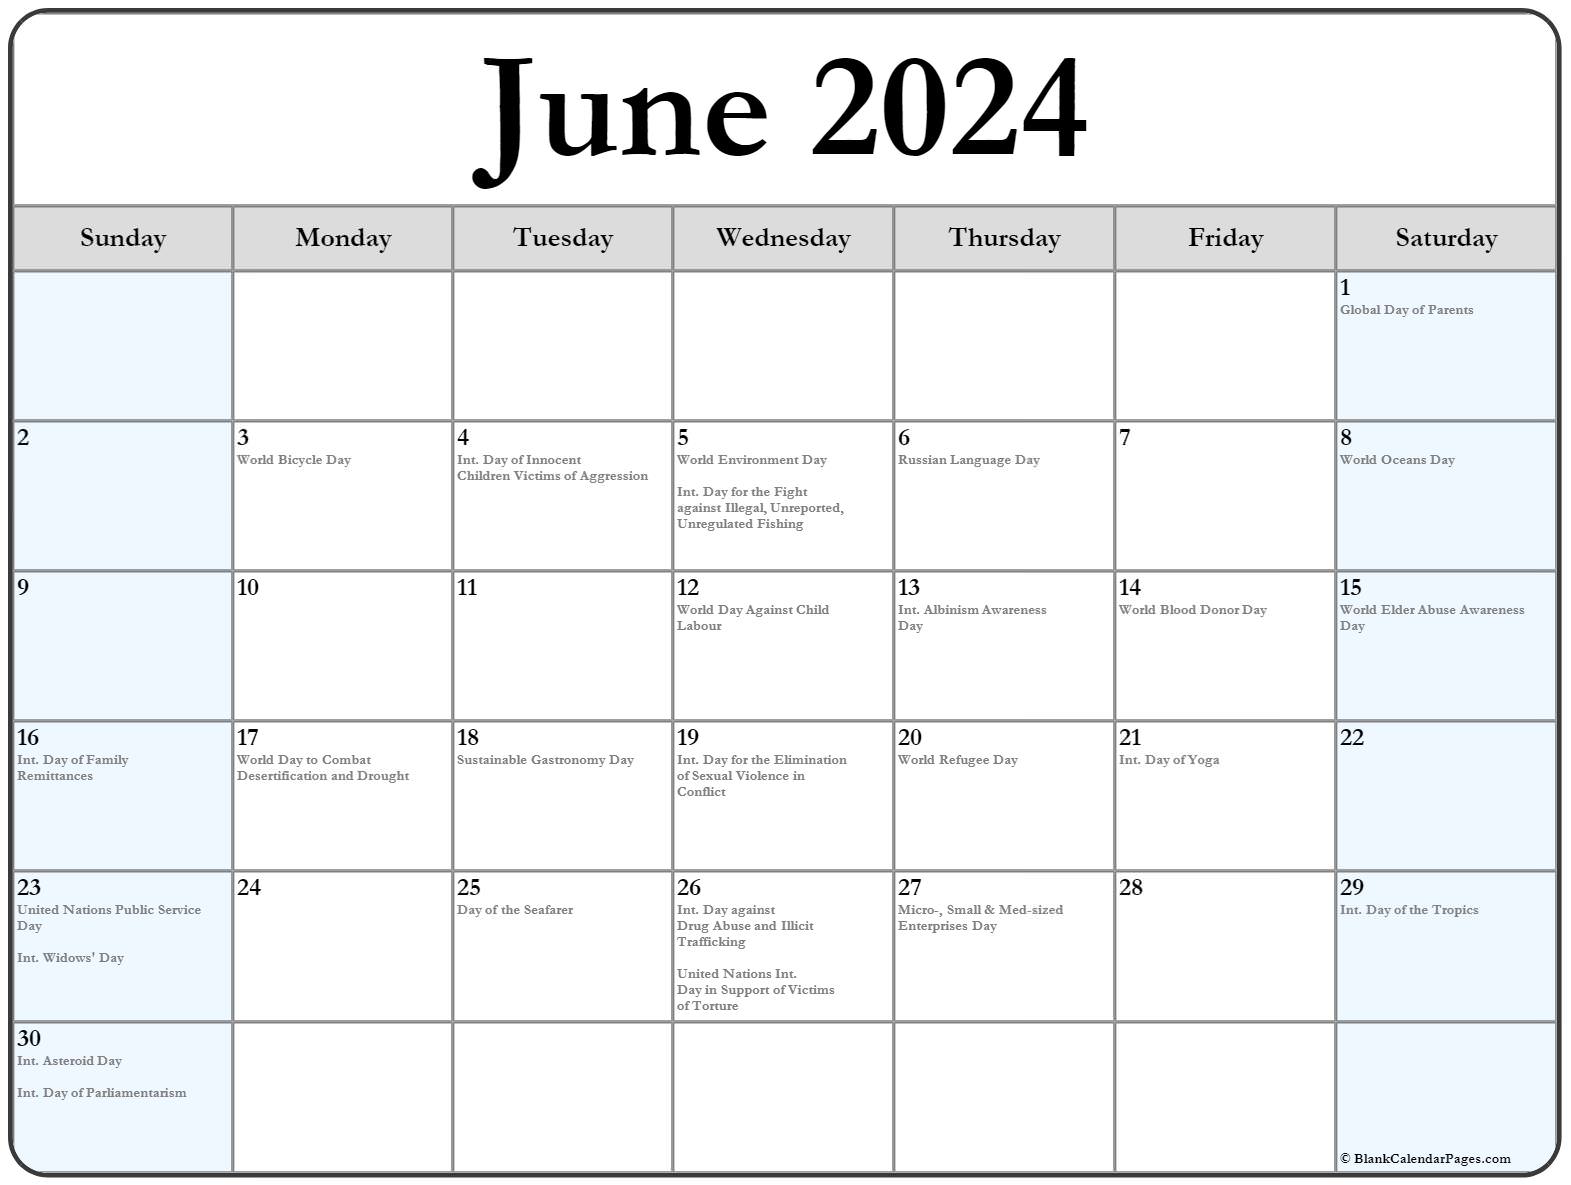 June 2024 Calendar Int Holidays1 